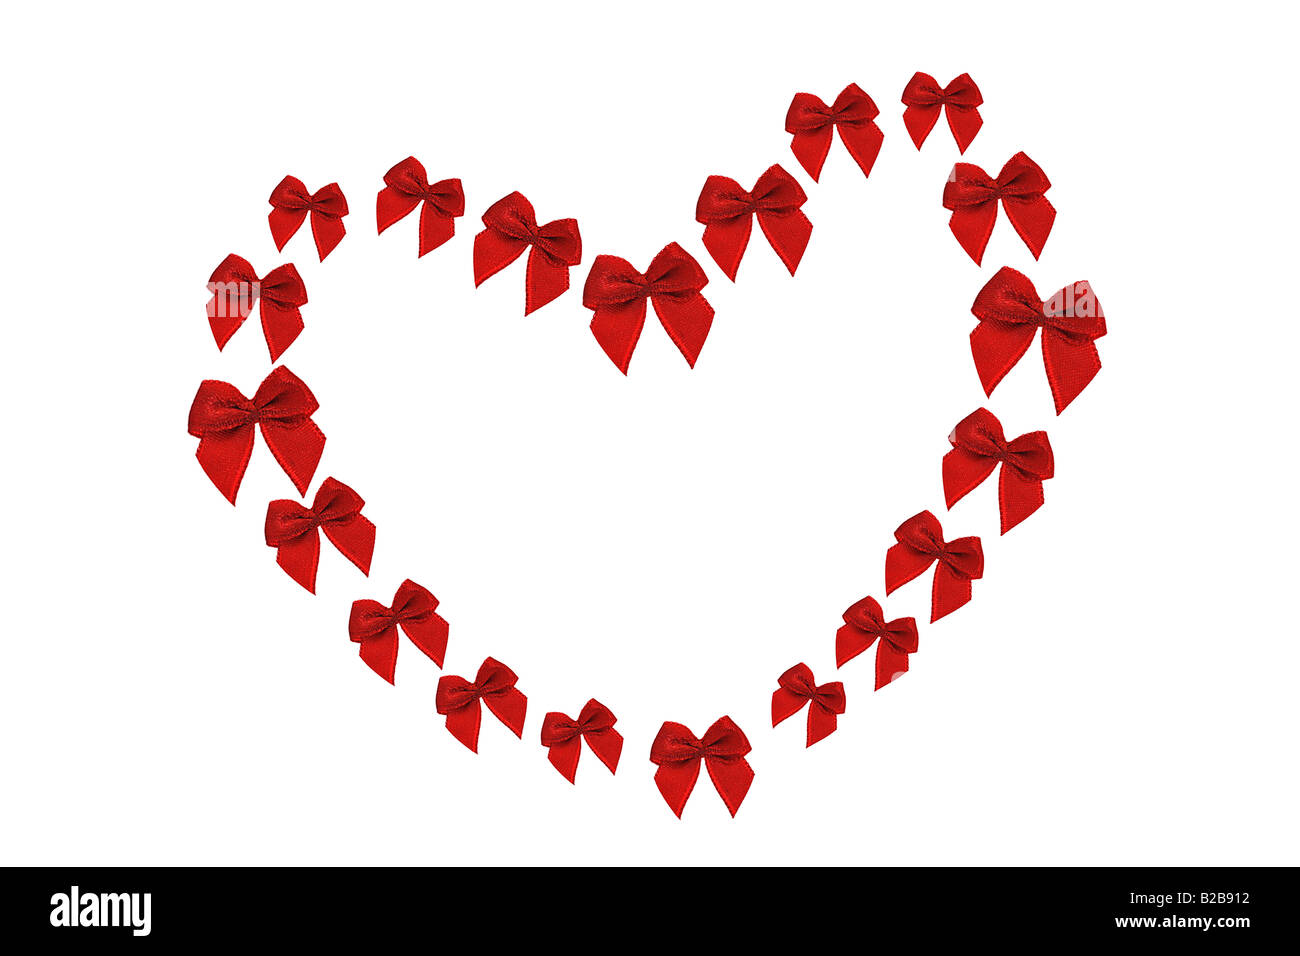 Arcs décoratifs rouges disposées en forme de coeur symbole sur fond blanc Banque D'Images